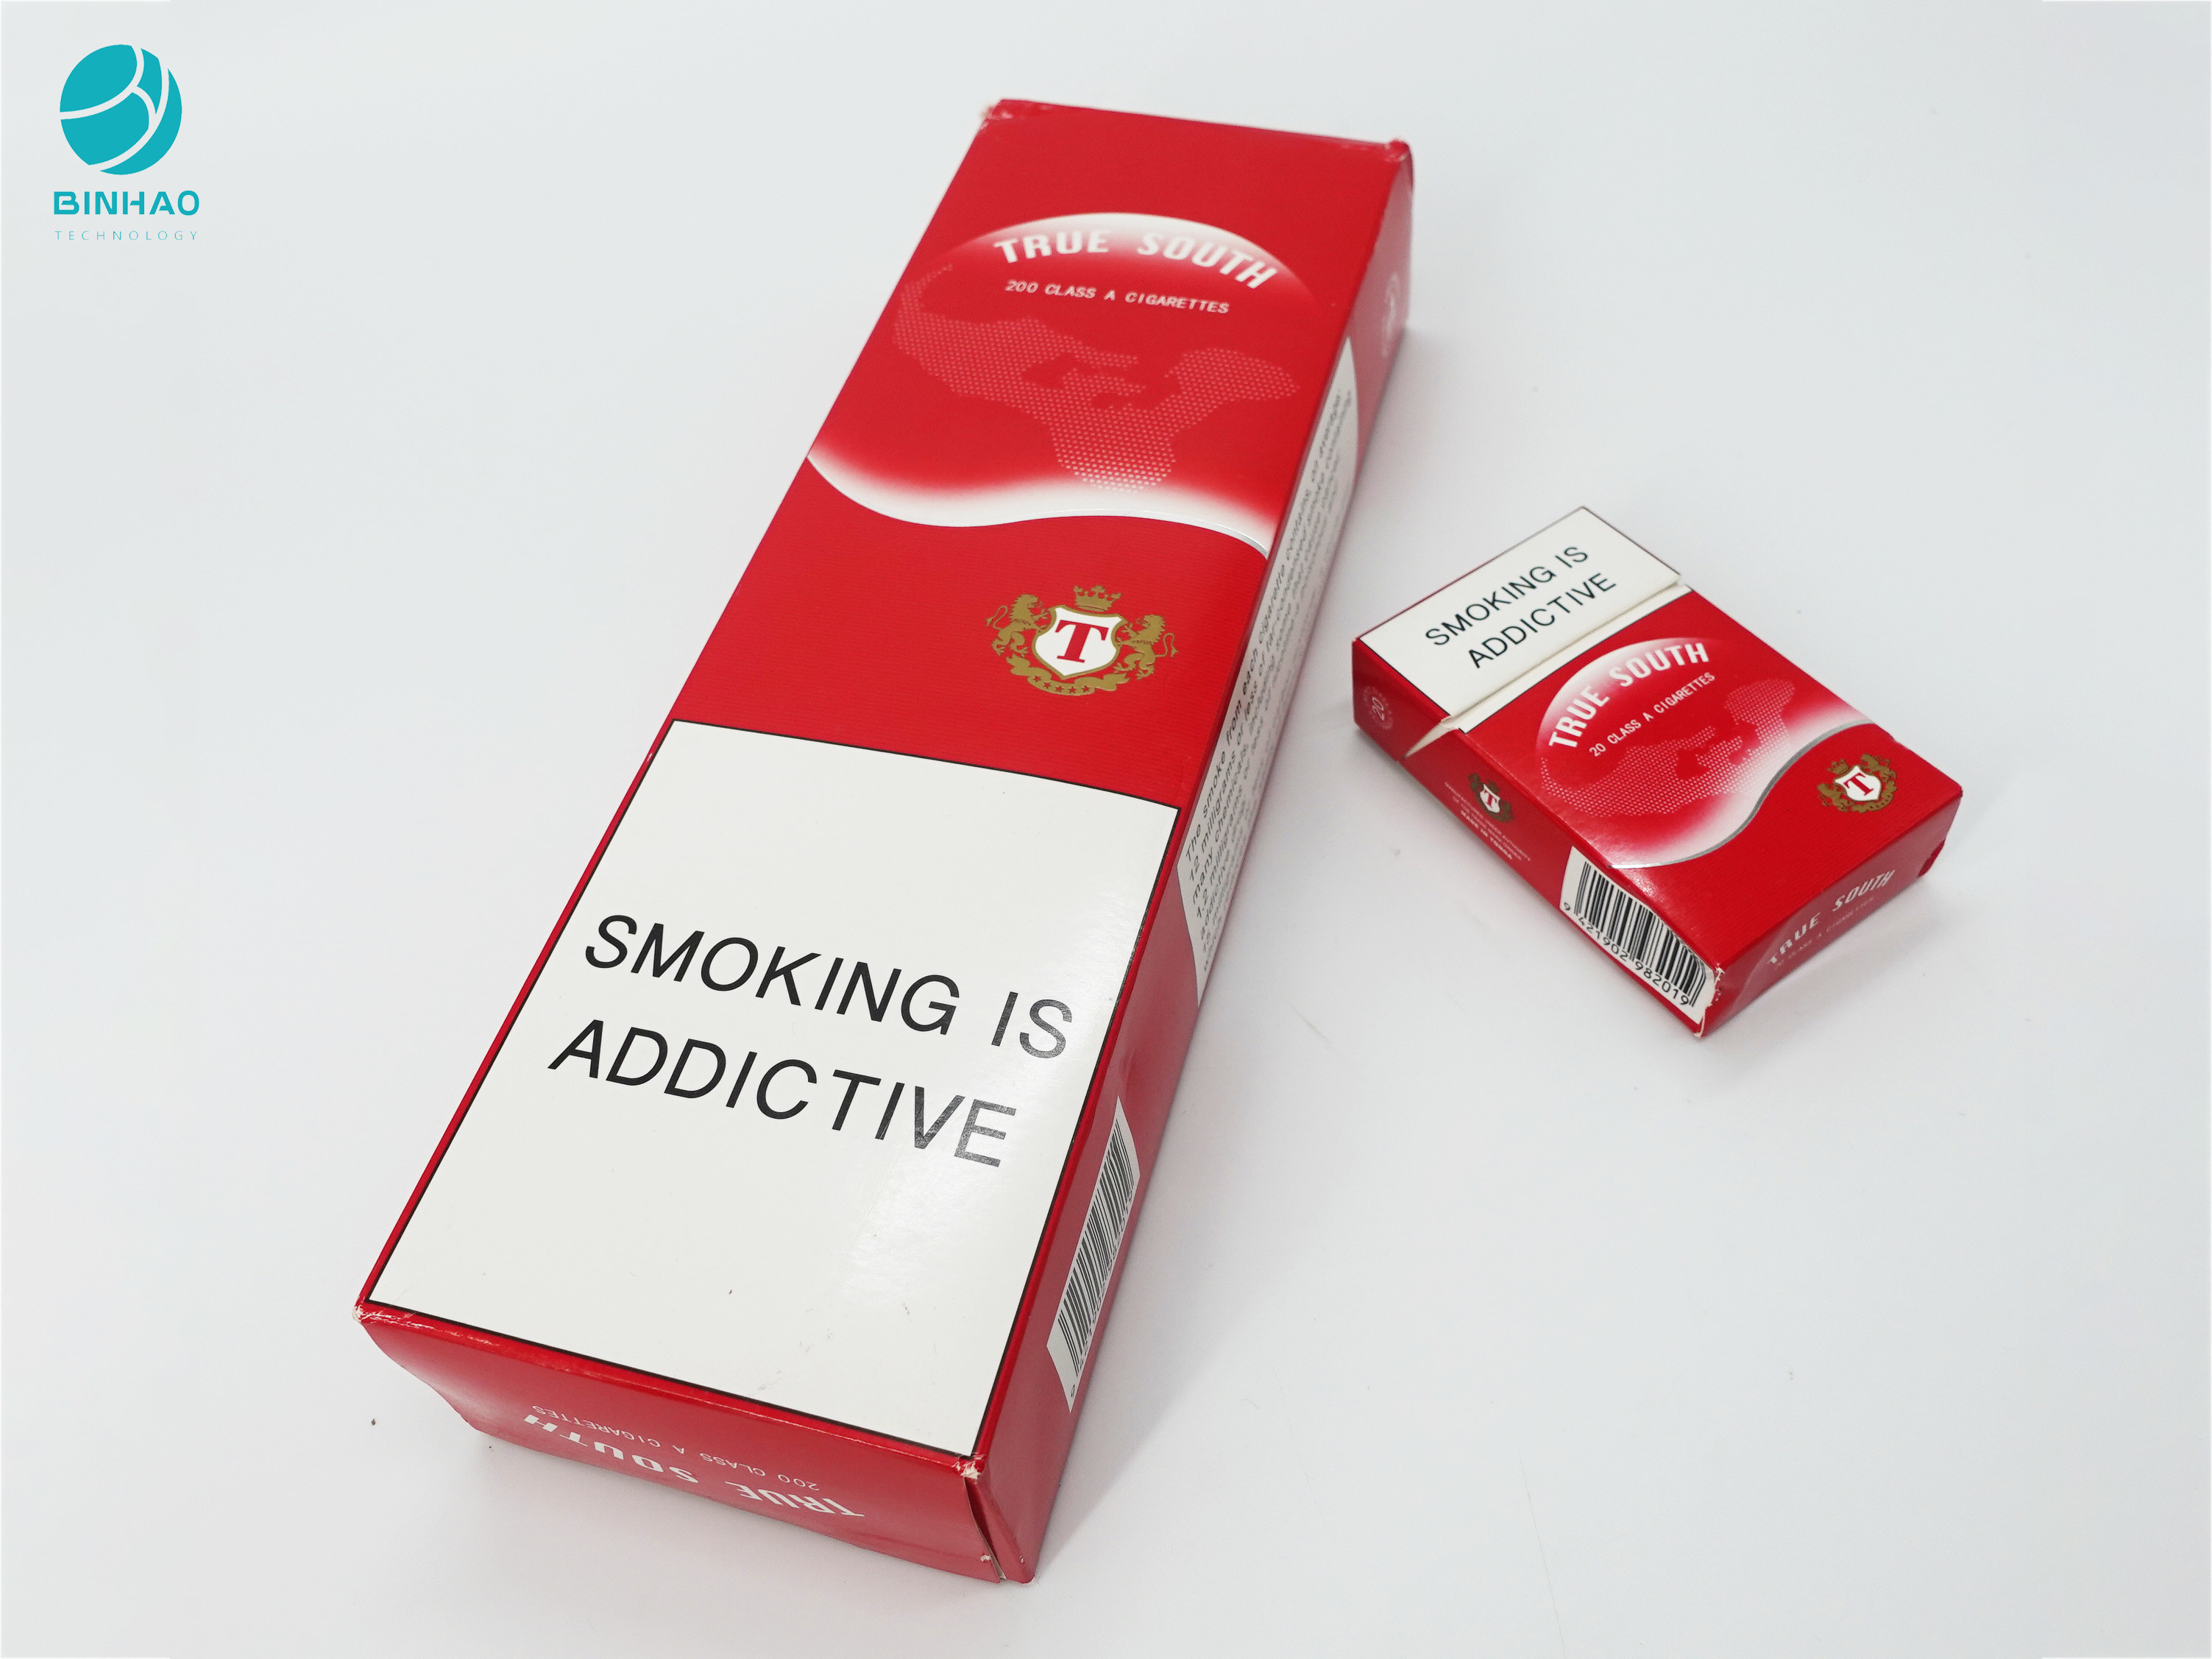 सिगरेट तम्बाकू बॉक्स पैकेजिंग के लिए लाल डिजाइन टिकाऊ कार्डबोर्ड पेपर मामले